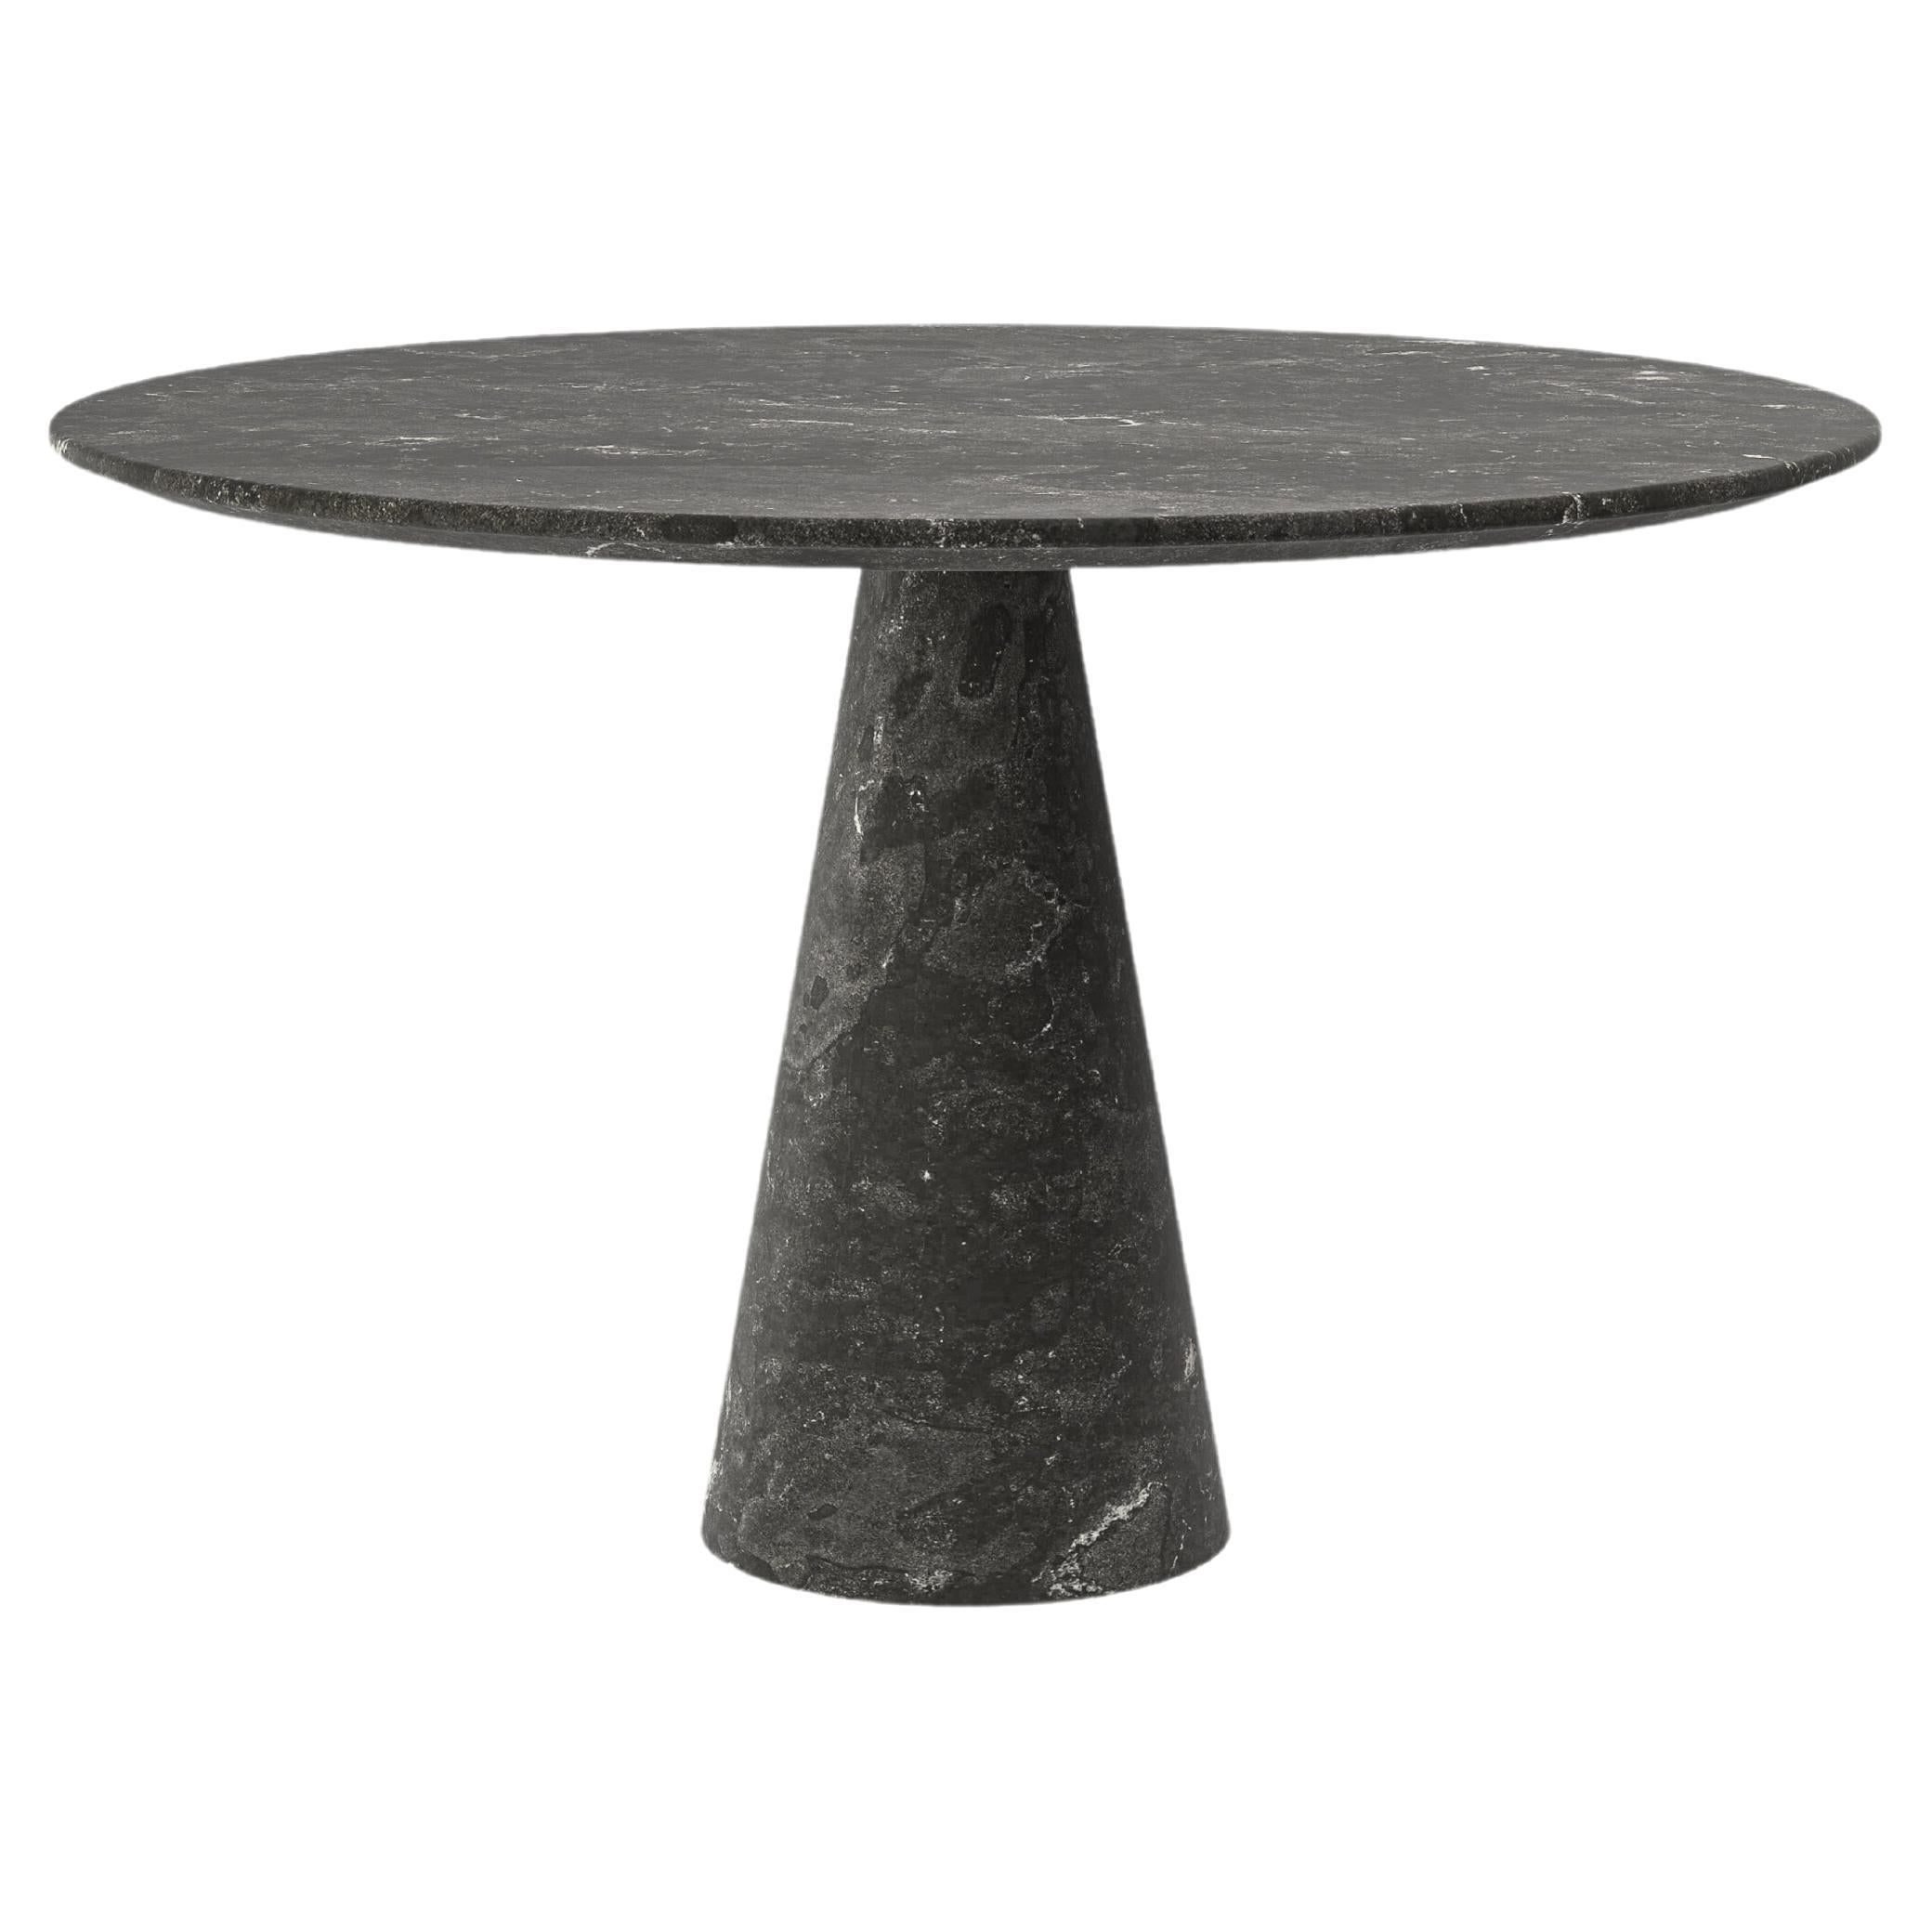 FORM(LA) Cono Round Dining Table 36”L x 36”W x 30”H Nero Petite Granite